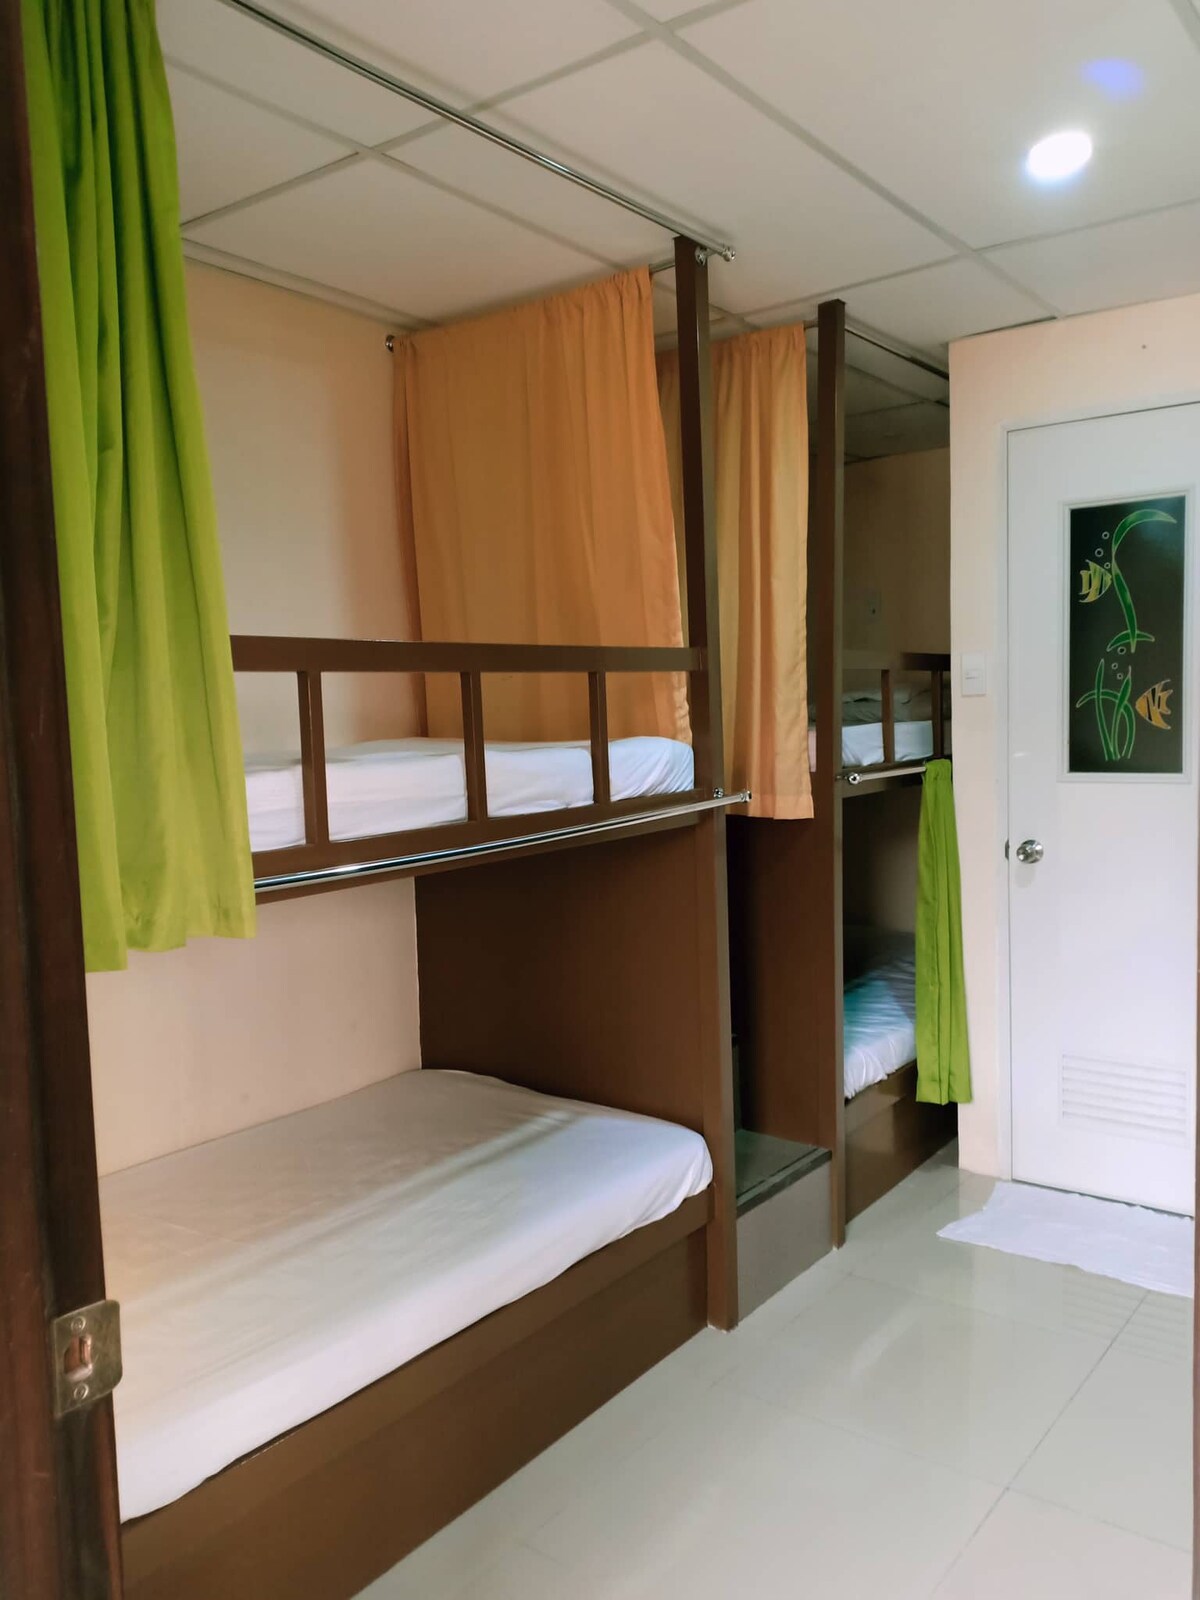 Hostel Room